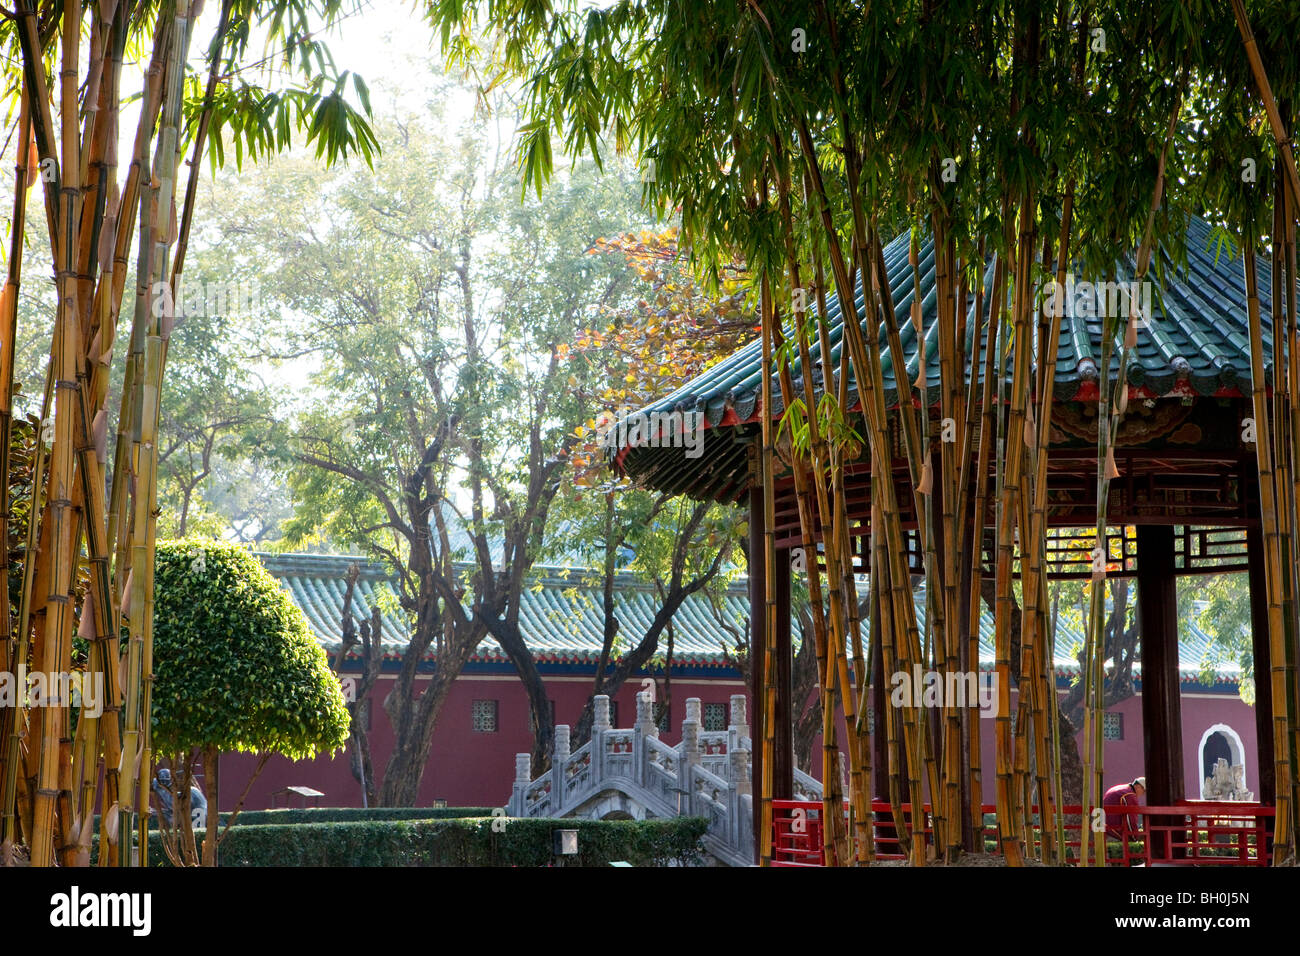 View through a park at Koxinga's shrine, Tainan, Taiwan, Asia Stock Photo